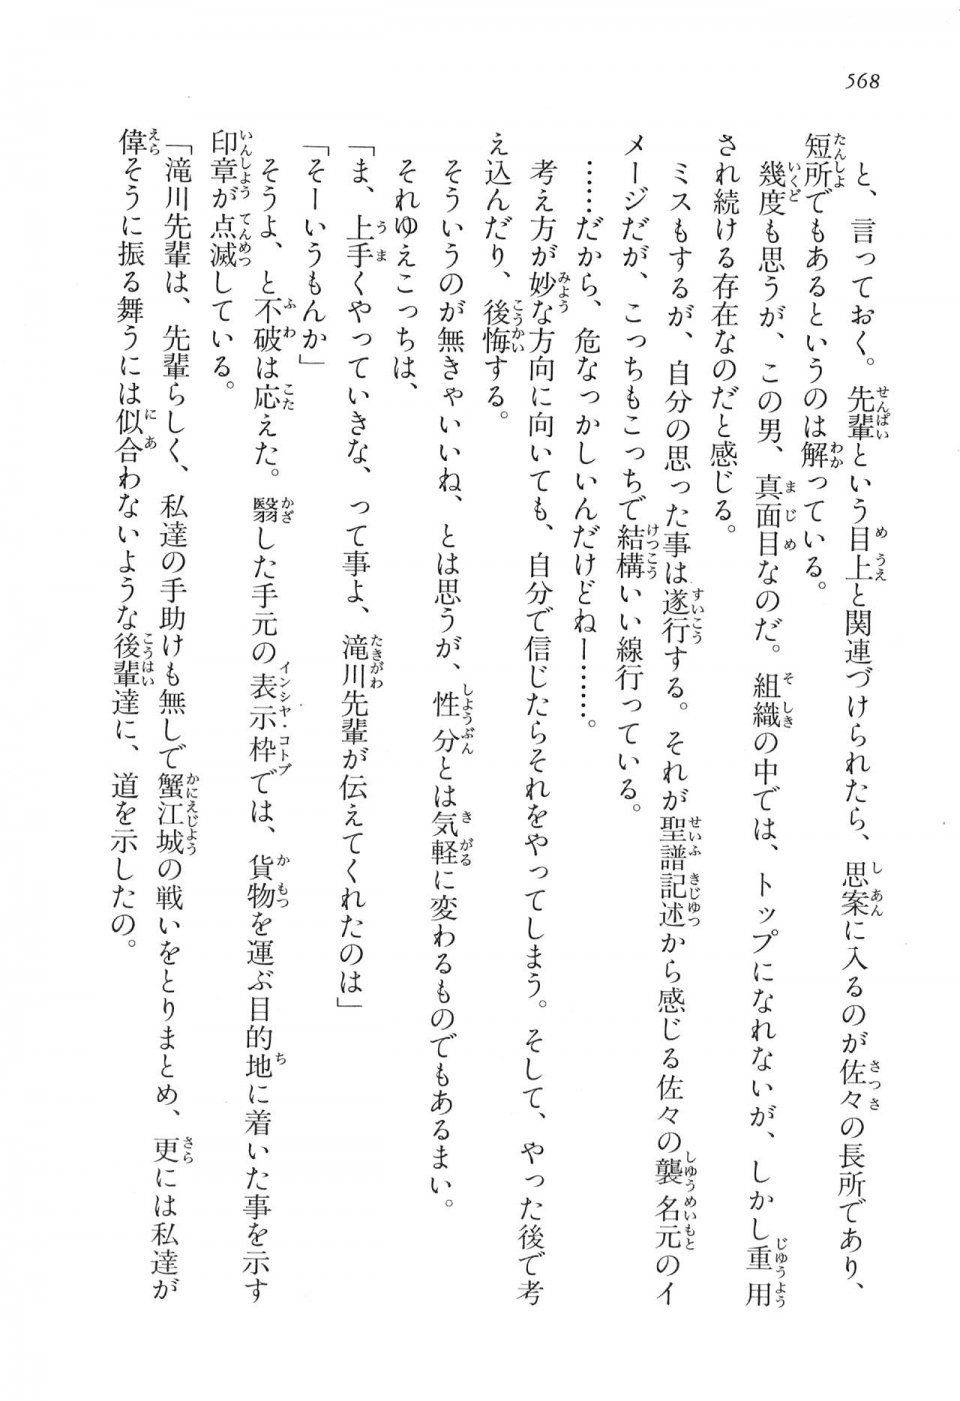 Kyoukai Senjou no Horizon LN Vol 16(7A) - Photo #568